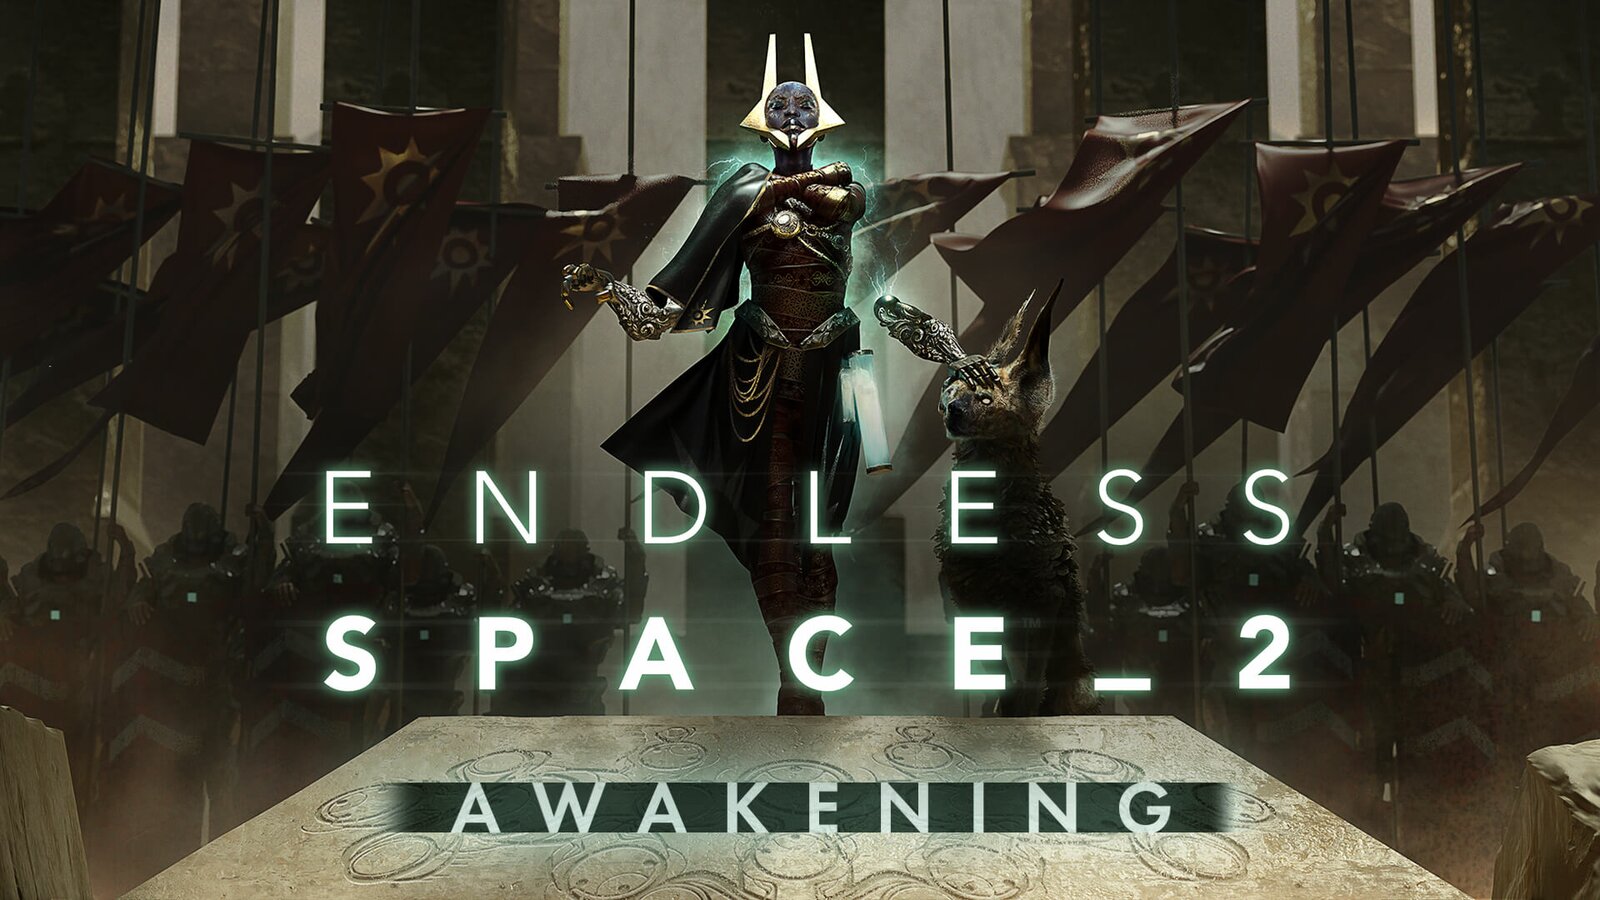 Endless Space 2 - Awakening